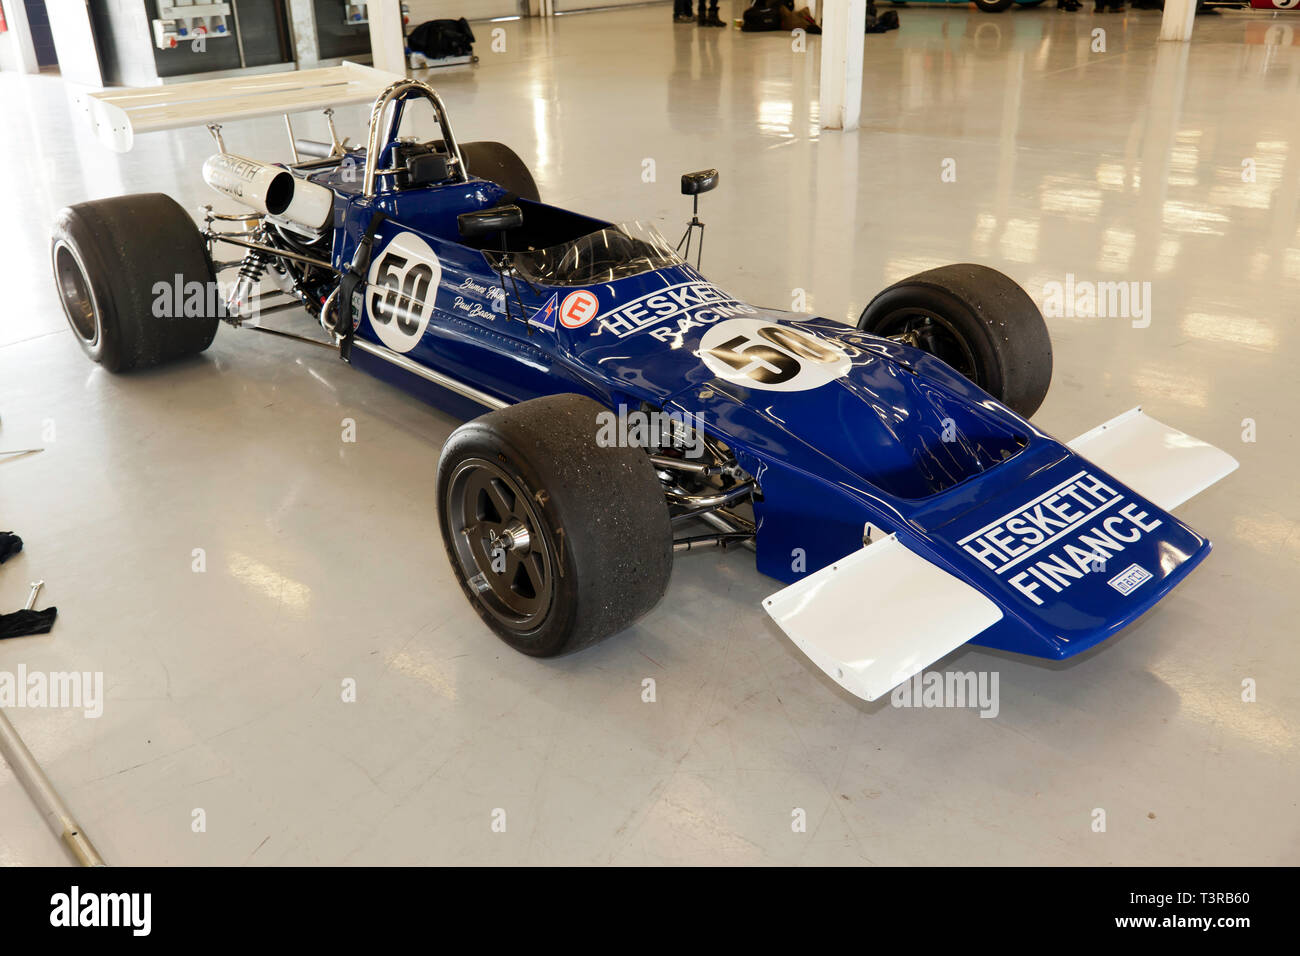 Ein Blau und Weiß, 1971, März 712 Historische Formel 2 Rennwagen, die einst von James Hunt gefahren, auf Anzeige in der Internationalen Pit Garagen, während der 2019 Silverstone Classic Media Day Stockfoto